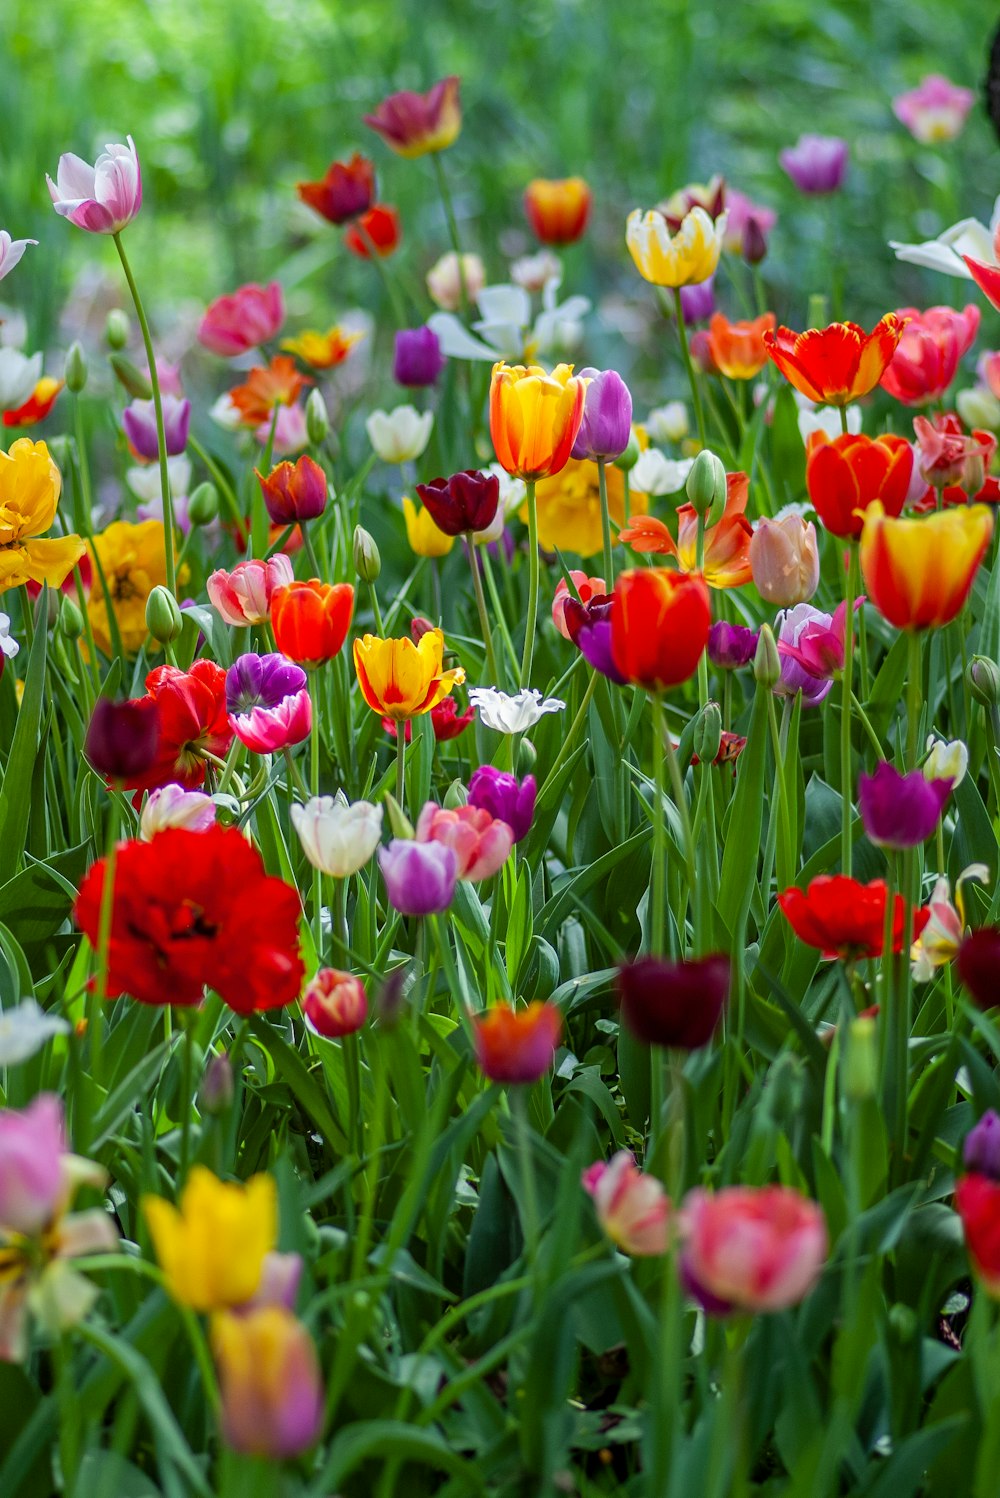 tuliips de cores variadas